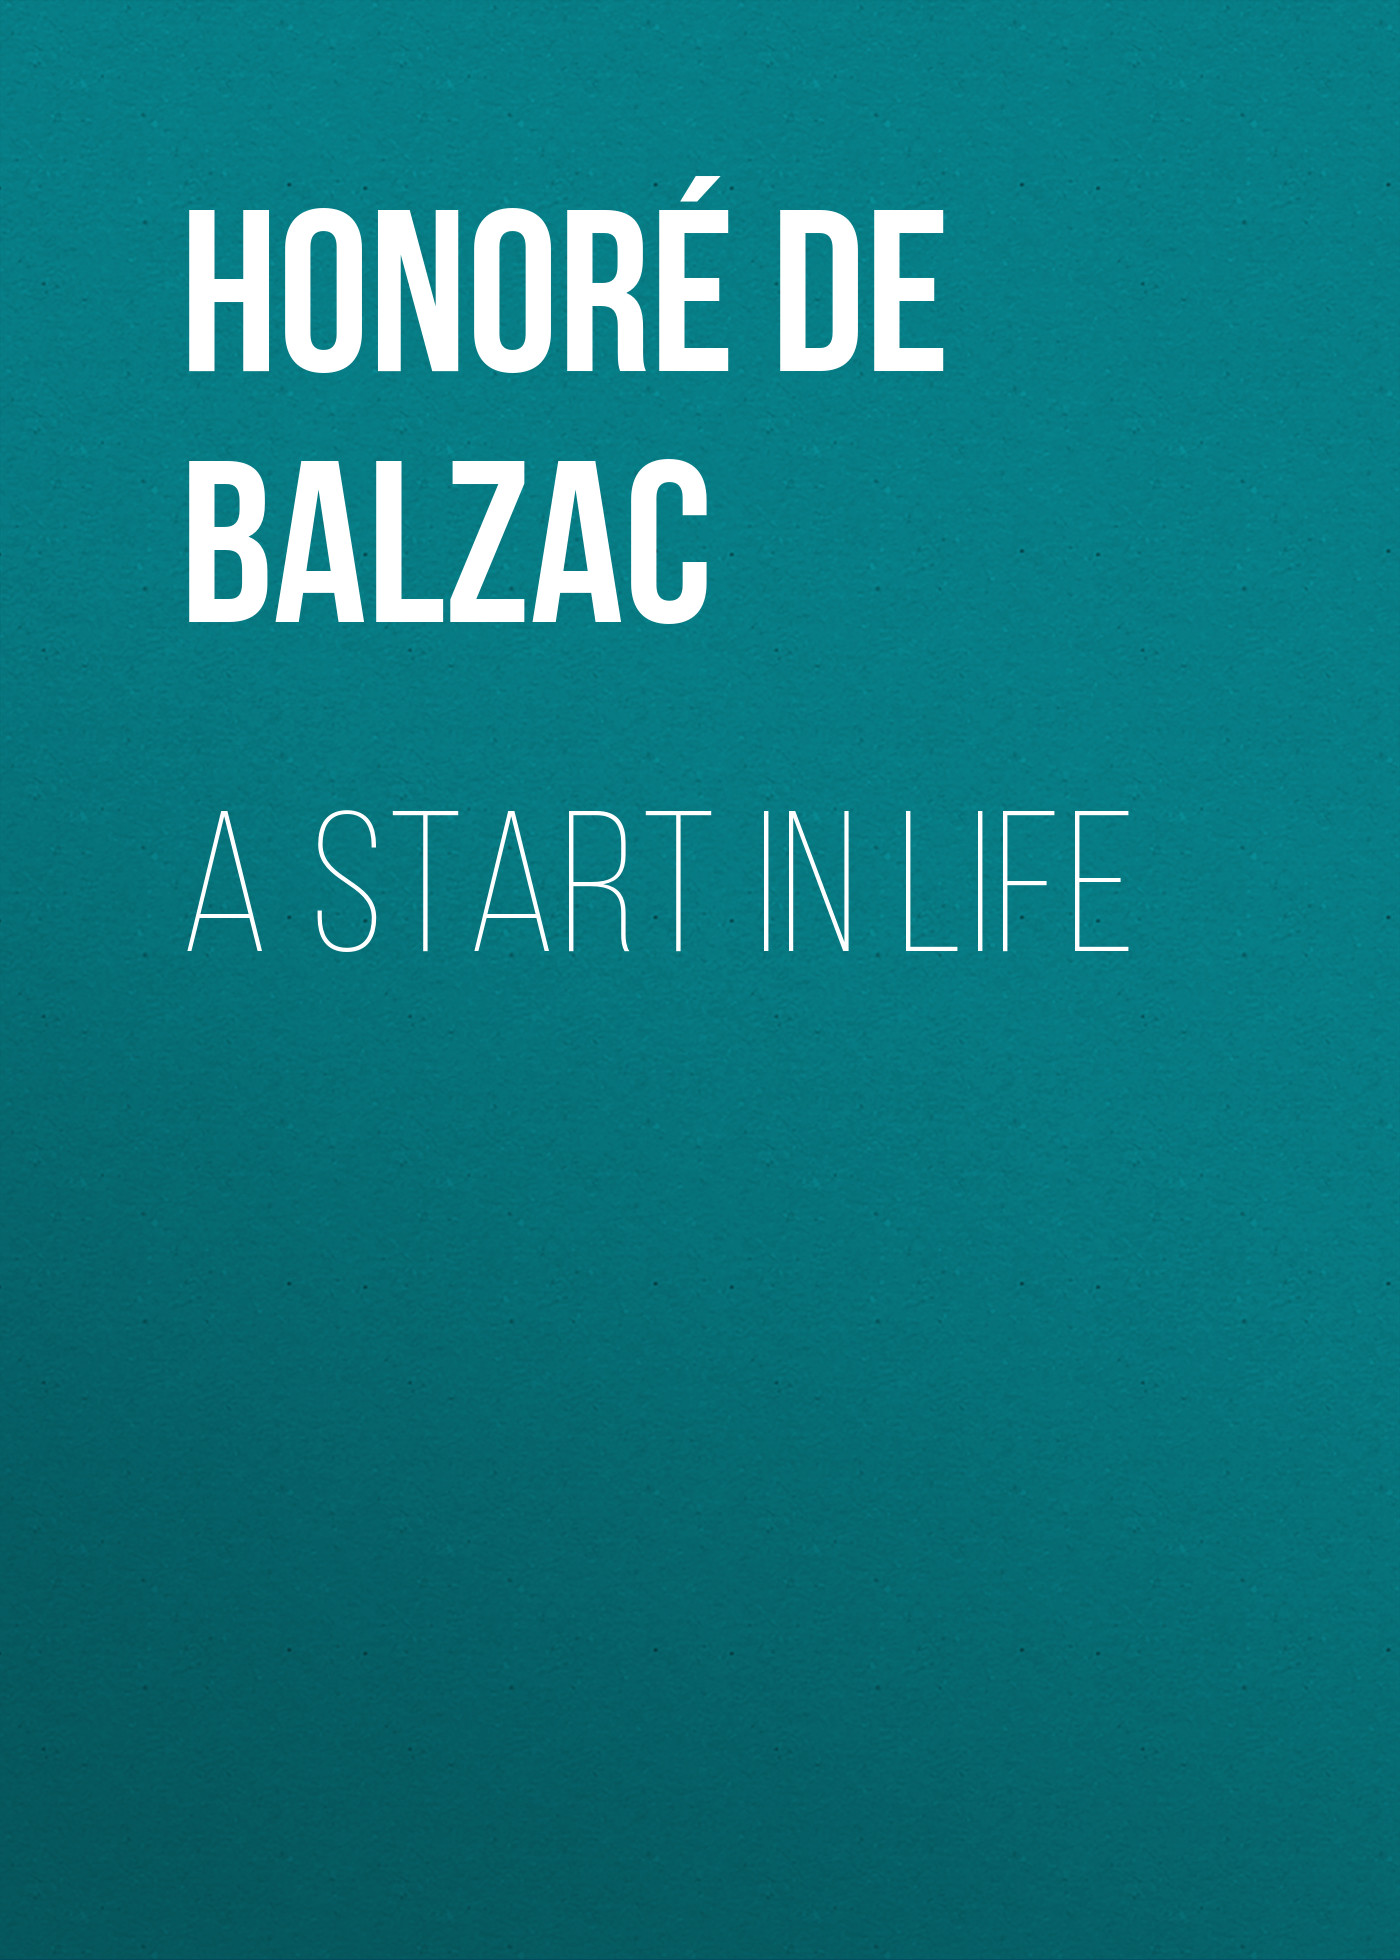 Книга A Start in Life из серии , созданная Honoré Balzac, может относится к жанру Литература 19 века, Зарубежная старинная литература, Зарубежная классика. Стоимость электронной книги A Start in Life с идентификатором 25020091 составляет 0 руб.